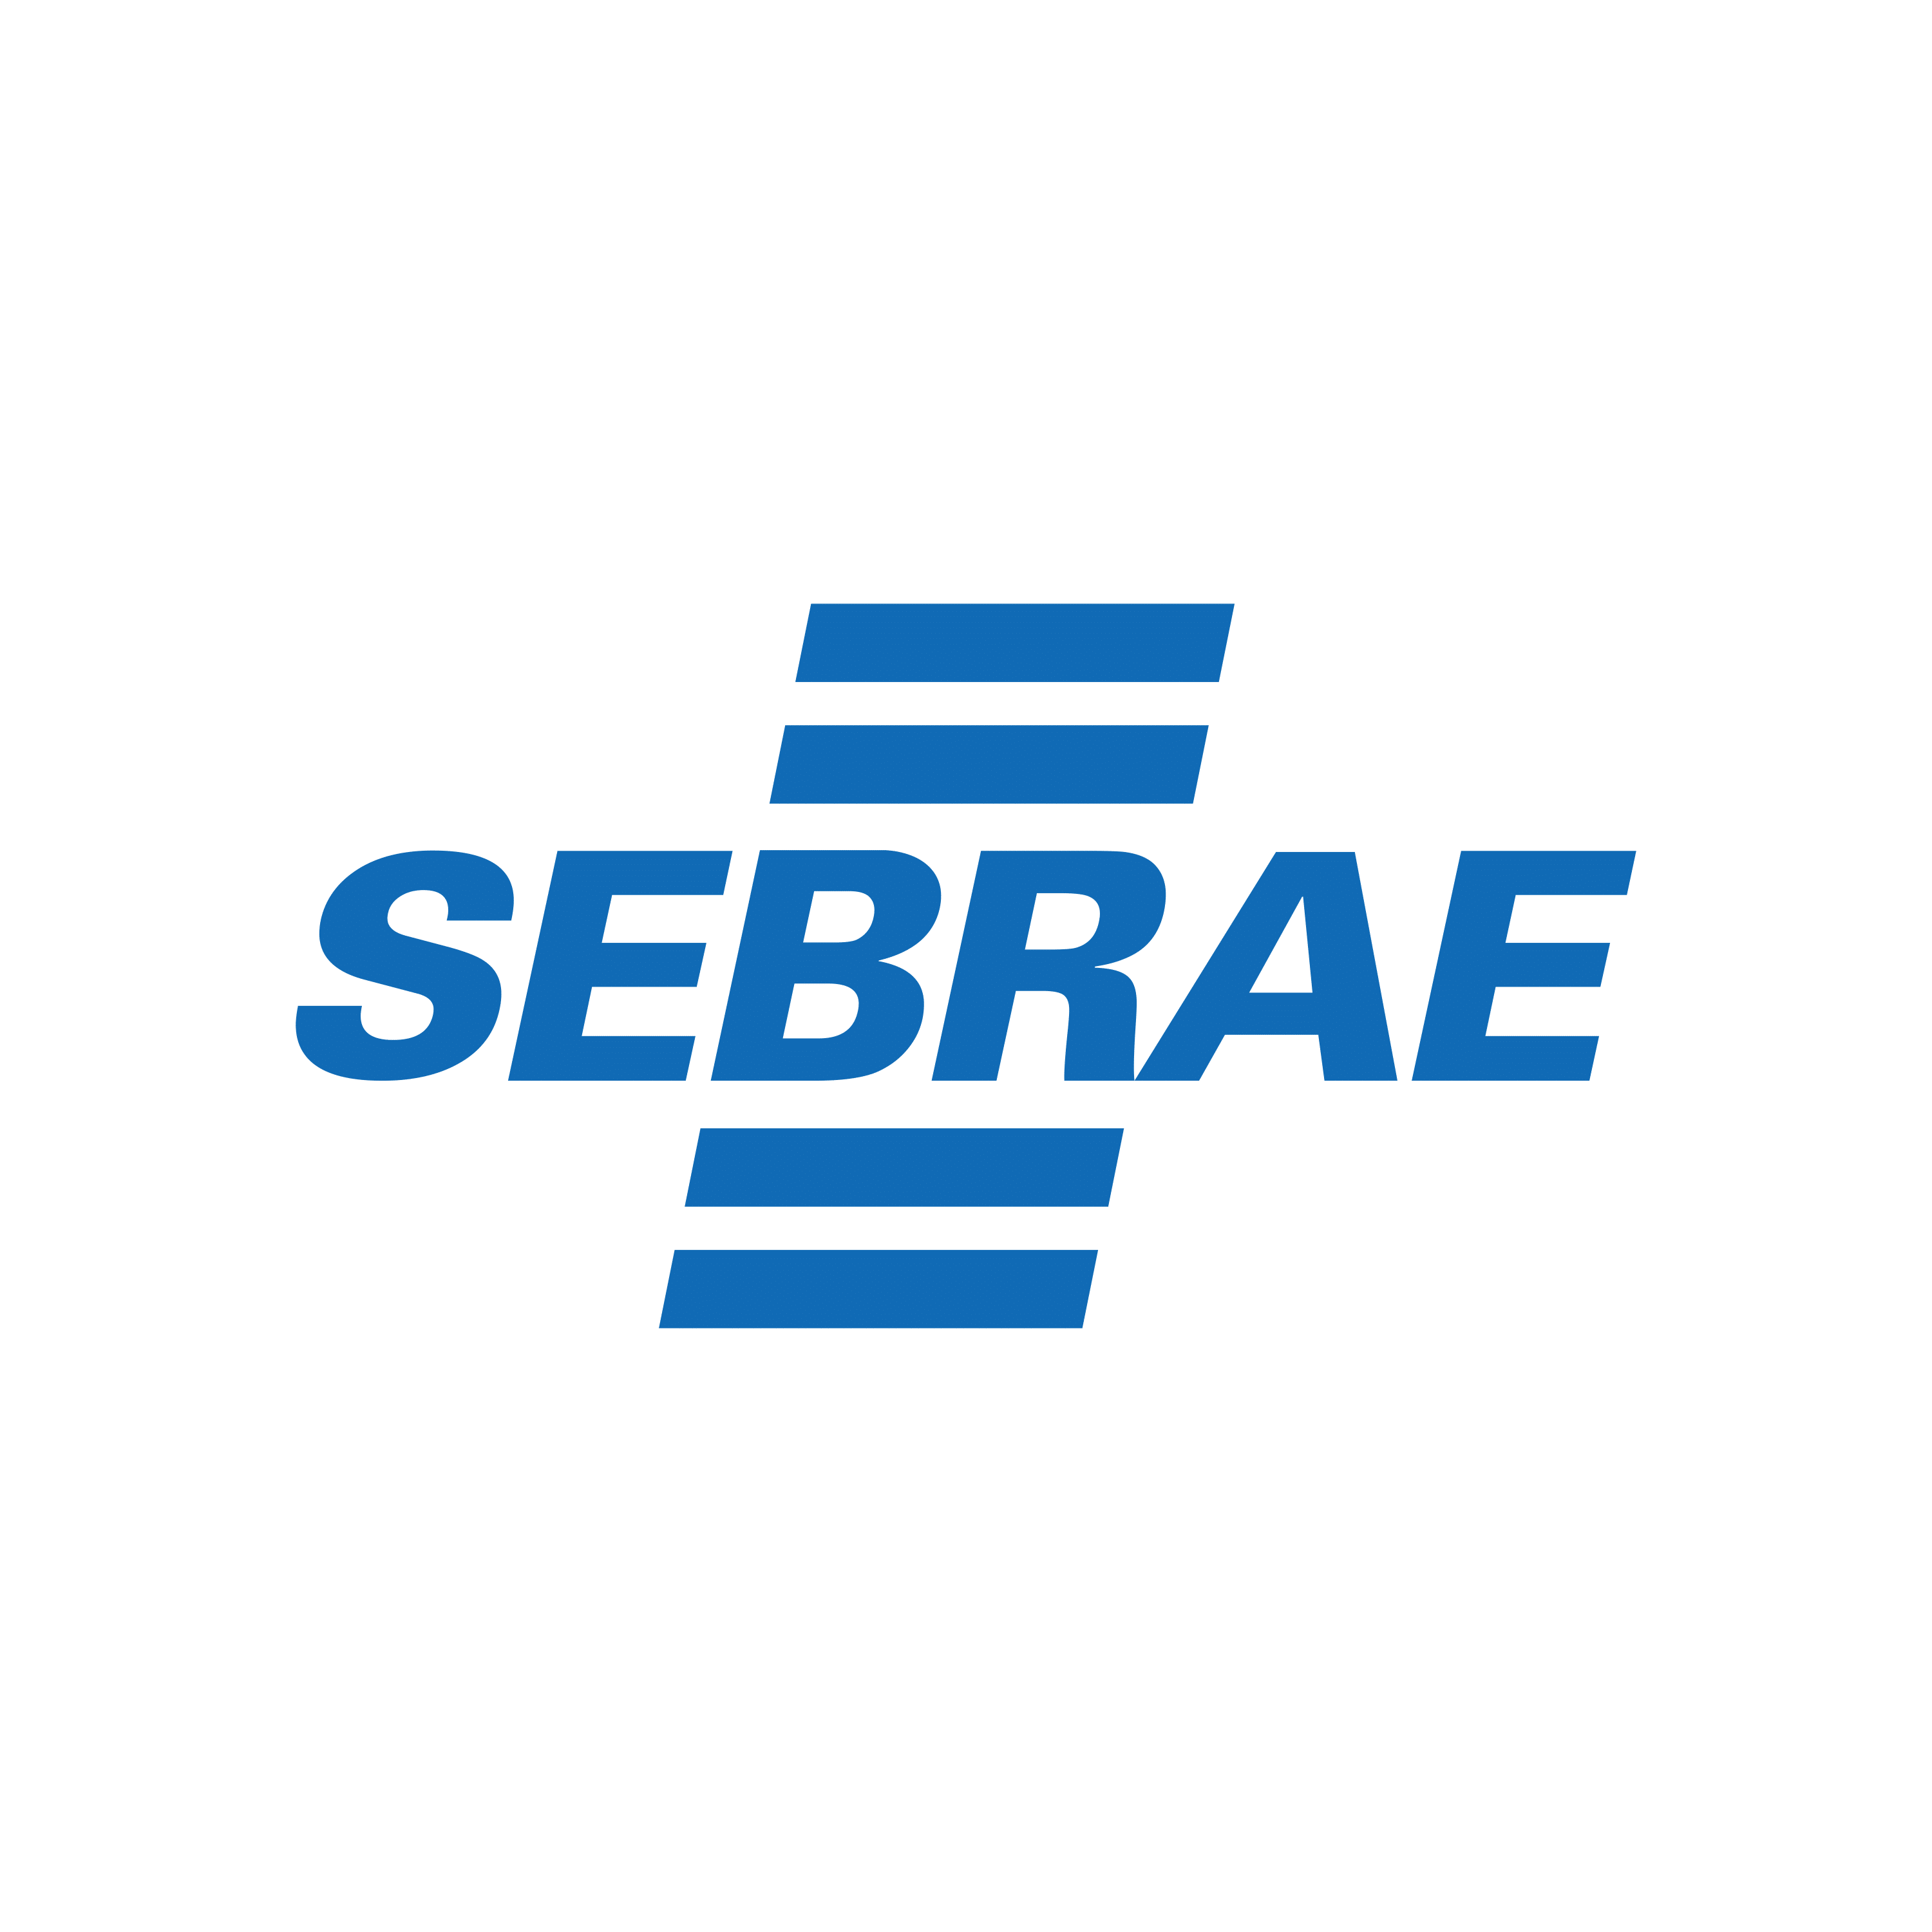 SEBRAE - LOGO-1